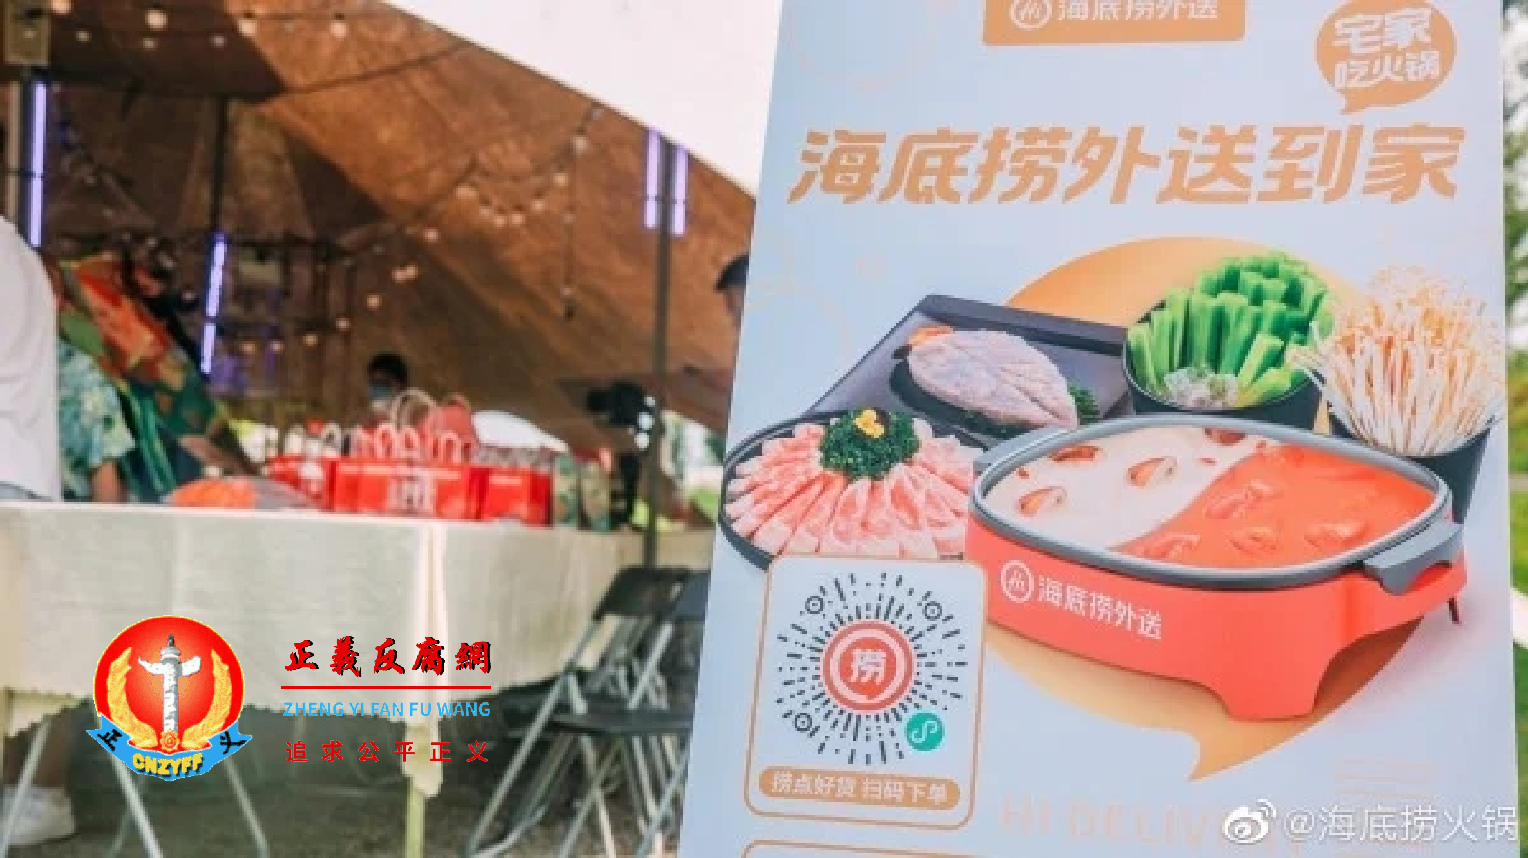 中国连锁火锅店品牌海底捞9月21日晚间再度公布董事会异动。.png